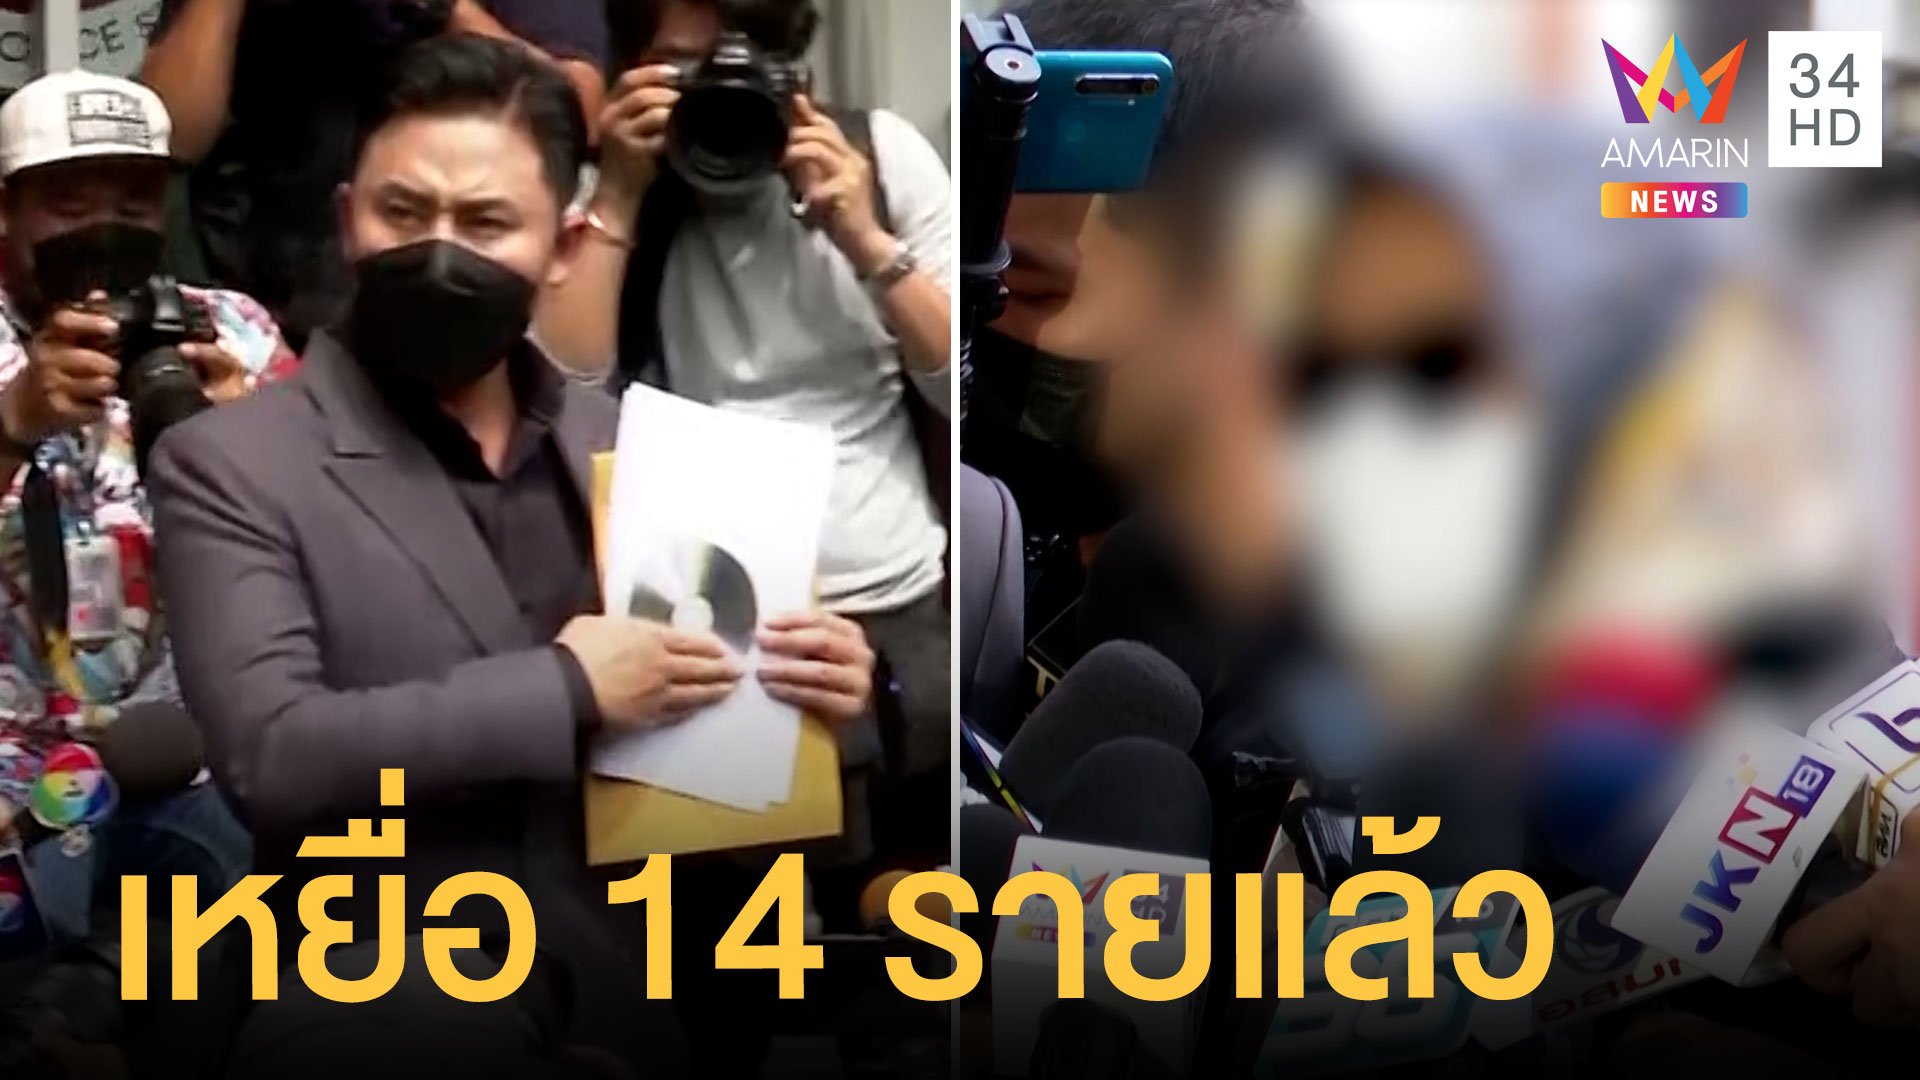 ทนายตั้มพาเหยื่อนักการเมืองแจ้งความ 14 ราย สาวเล่าชวนดื่มก่อนขืนใจ | ข่าวเที่ยงอมรินทร์ | 19 เม.ย. 65 | AMARIN TVHD34